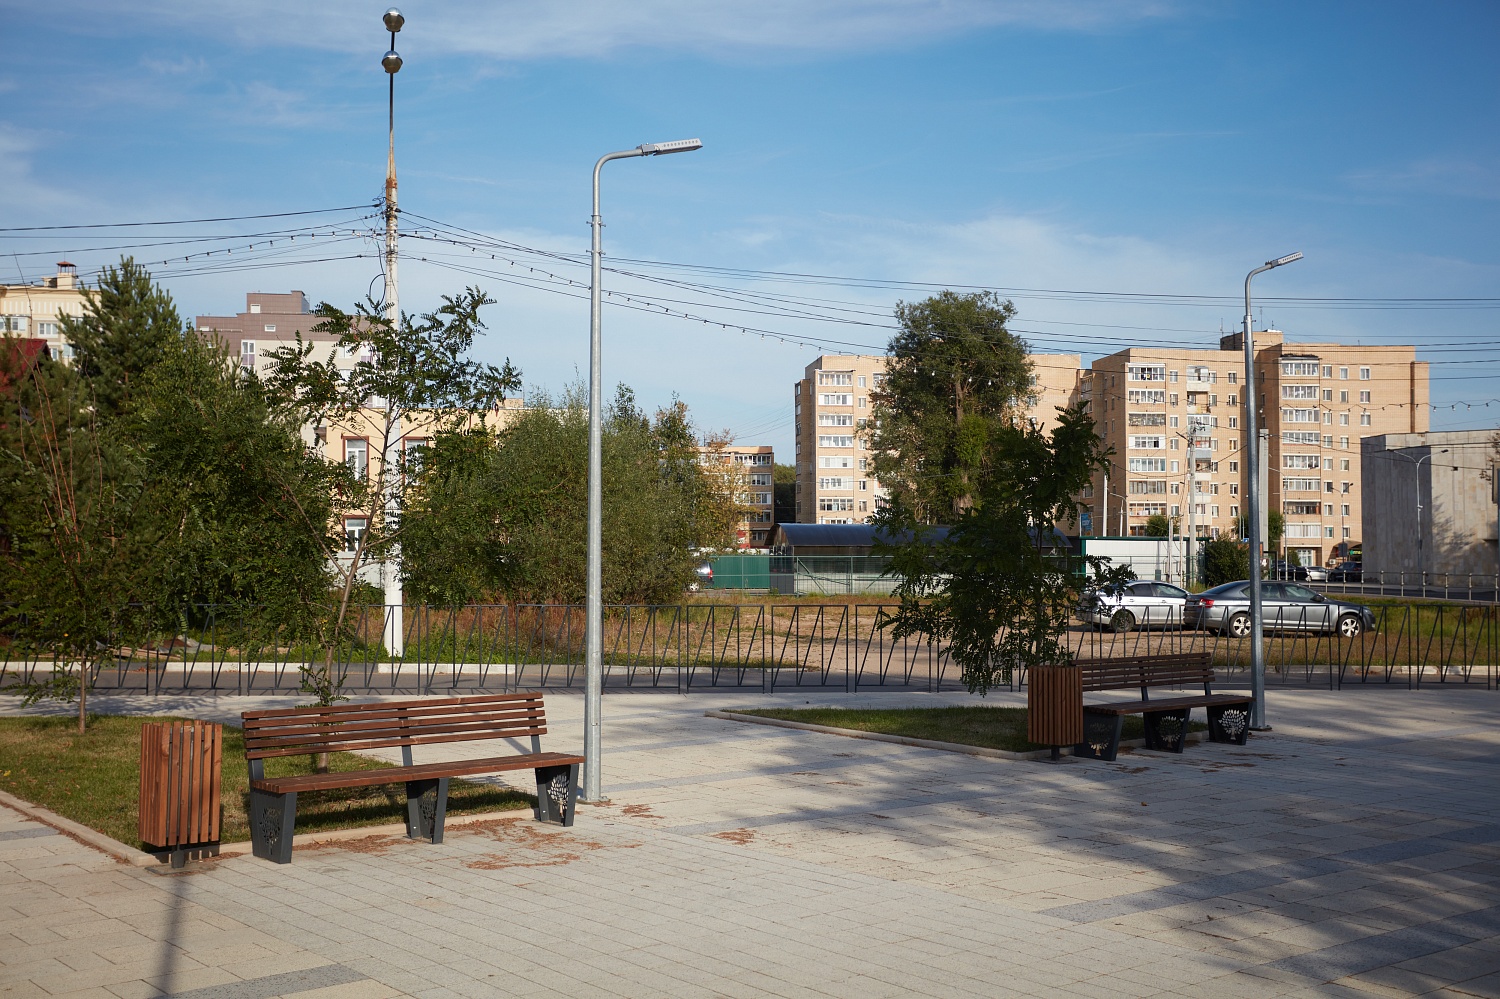 Зона отдыха Георгиевского пруда, Руза, Московская область, 2020 г.